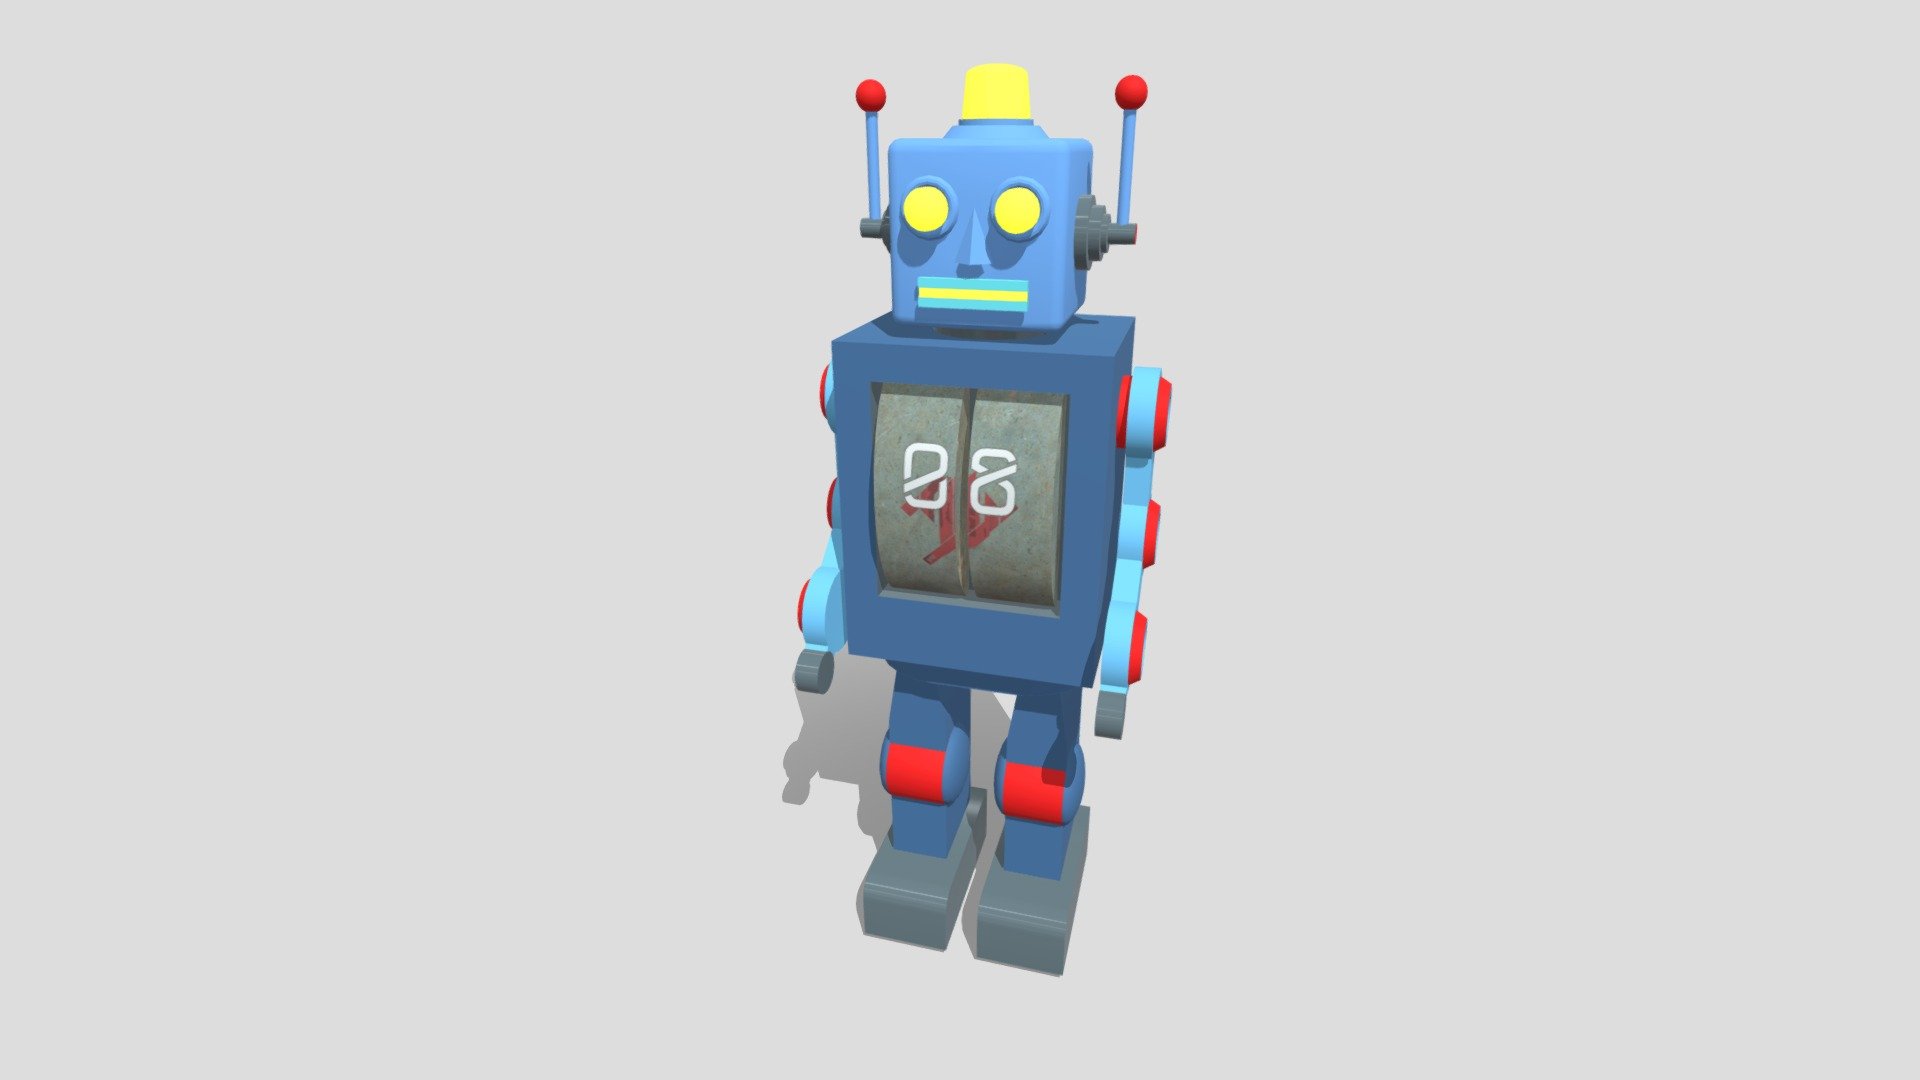 Robot - 3D model by EQ (@ErichBrutus) [dfec9dd] - Sketchfab